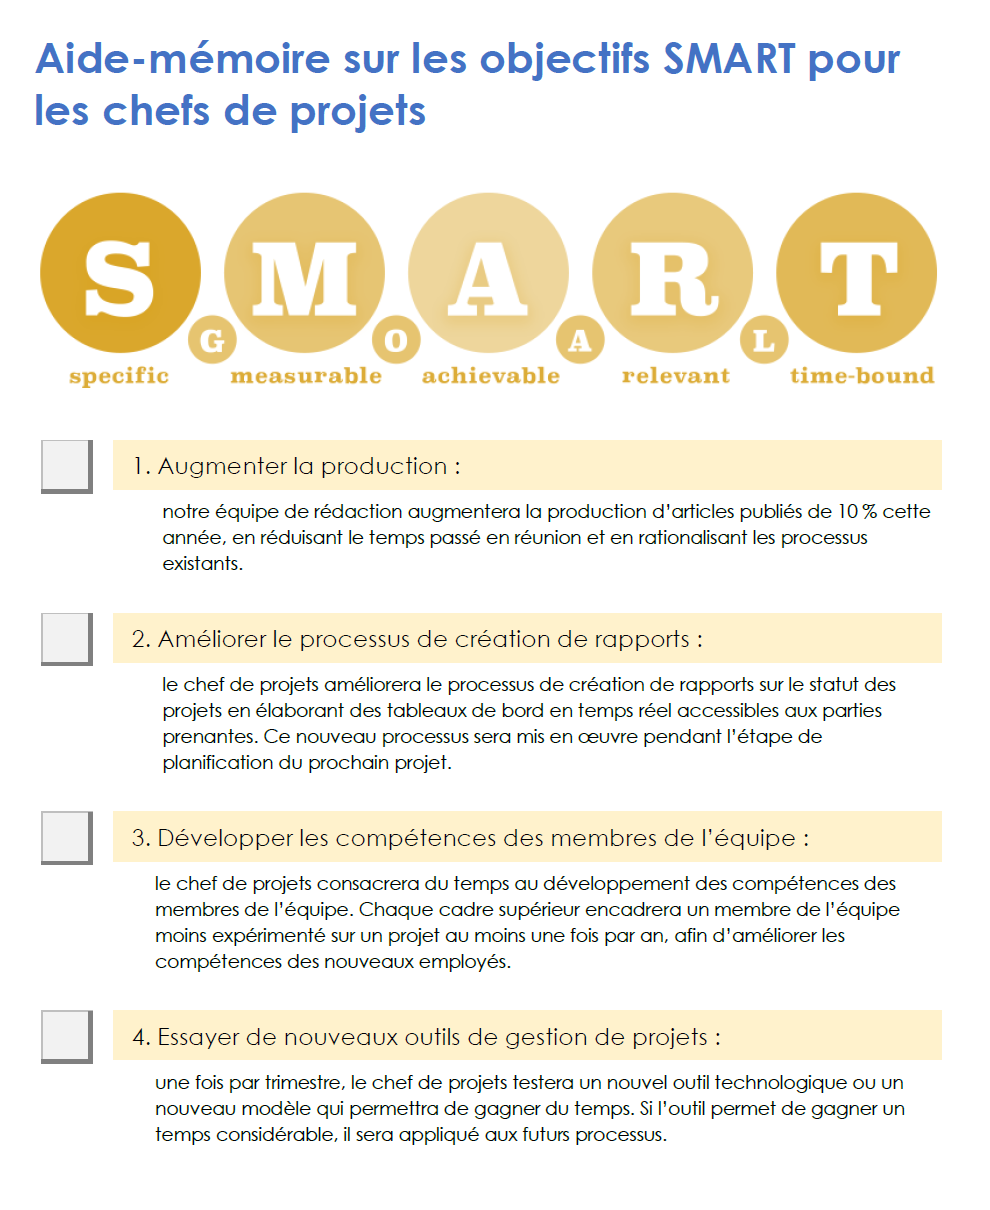 Aide-mémoire sur les objectifs SMART pour les chefs de projet